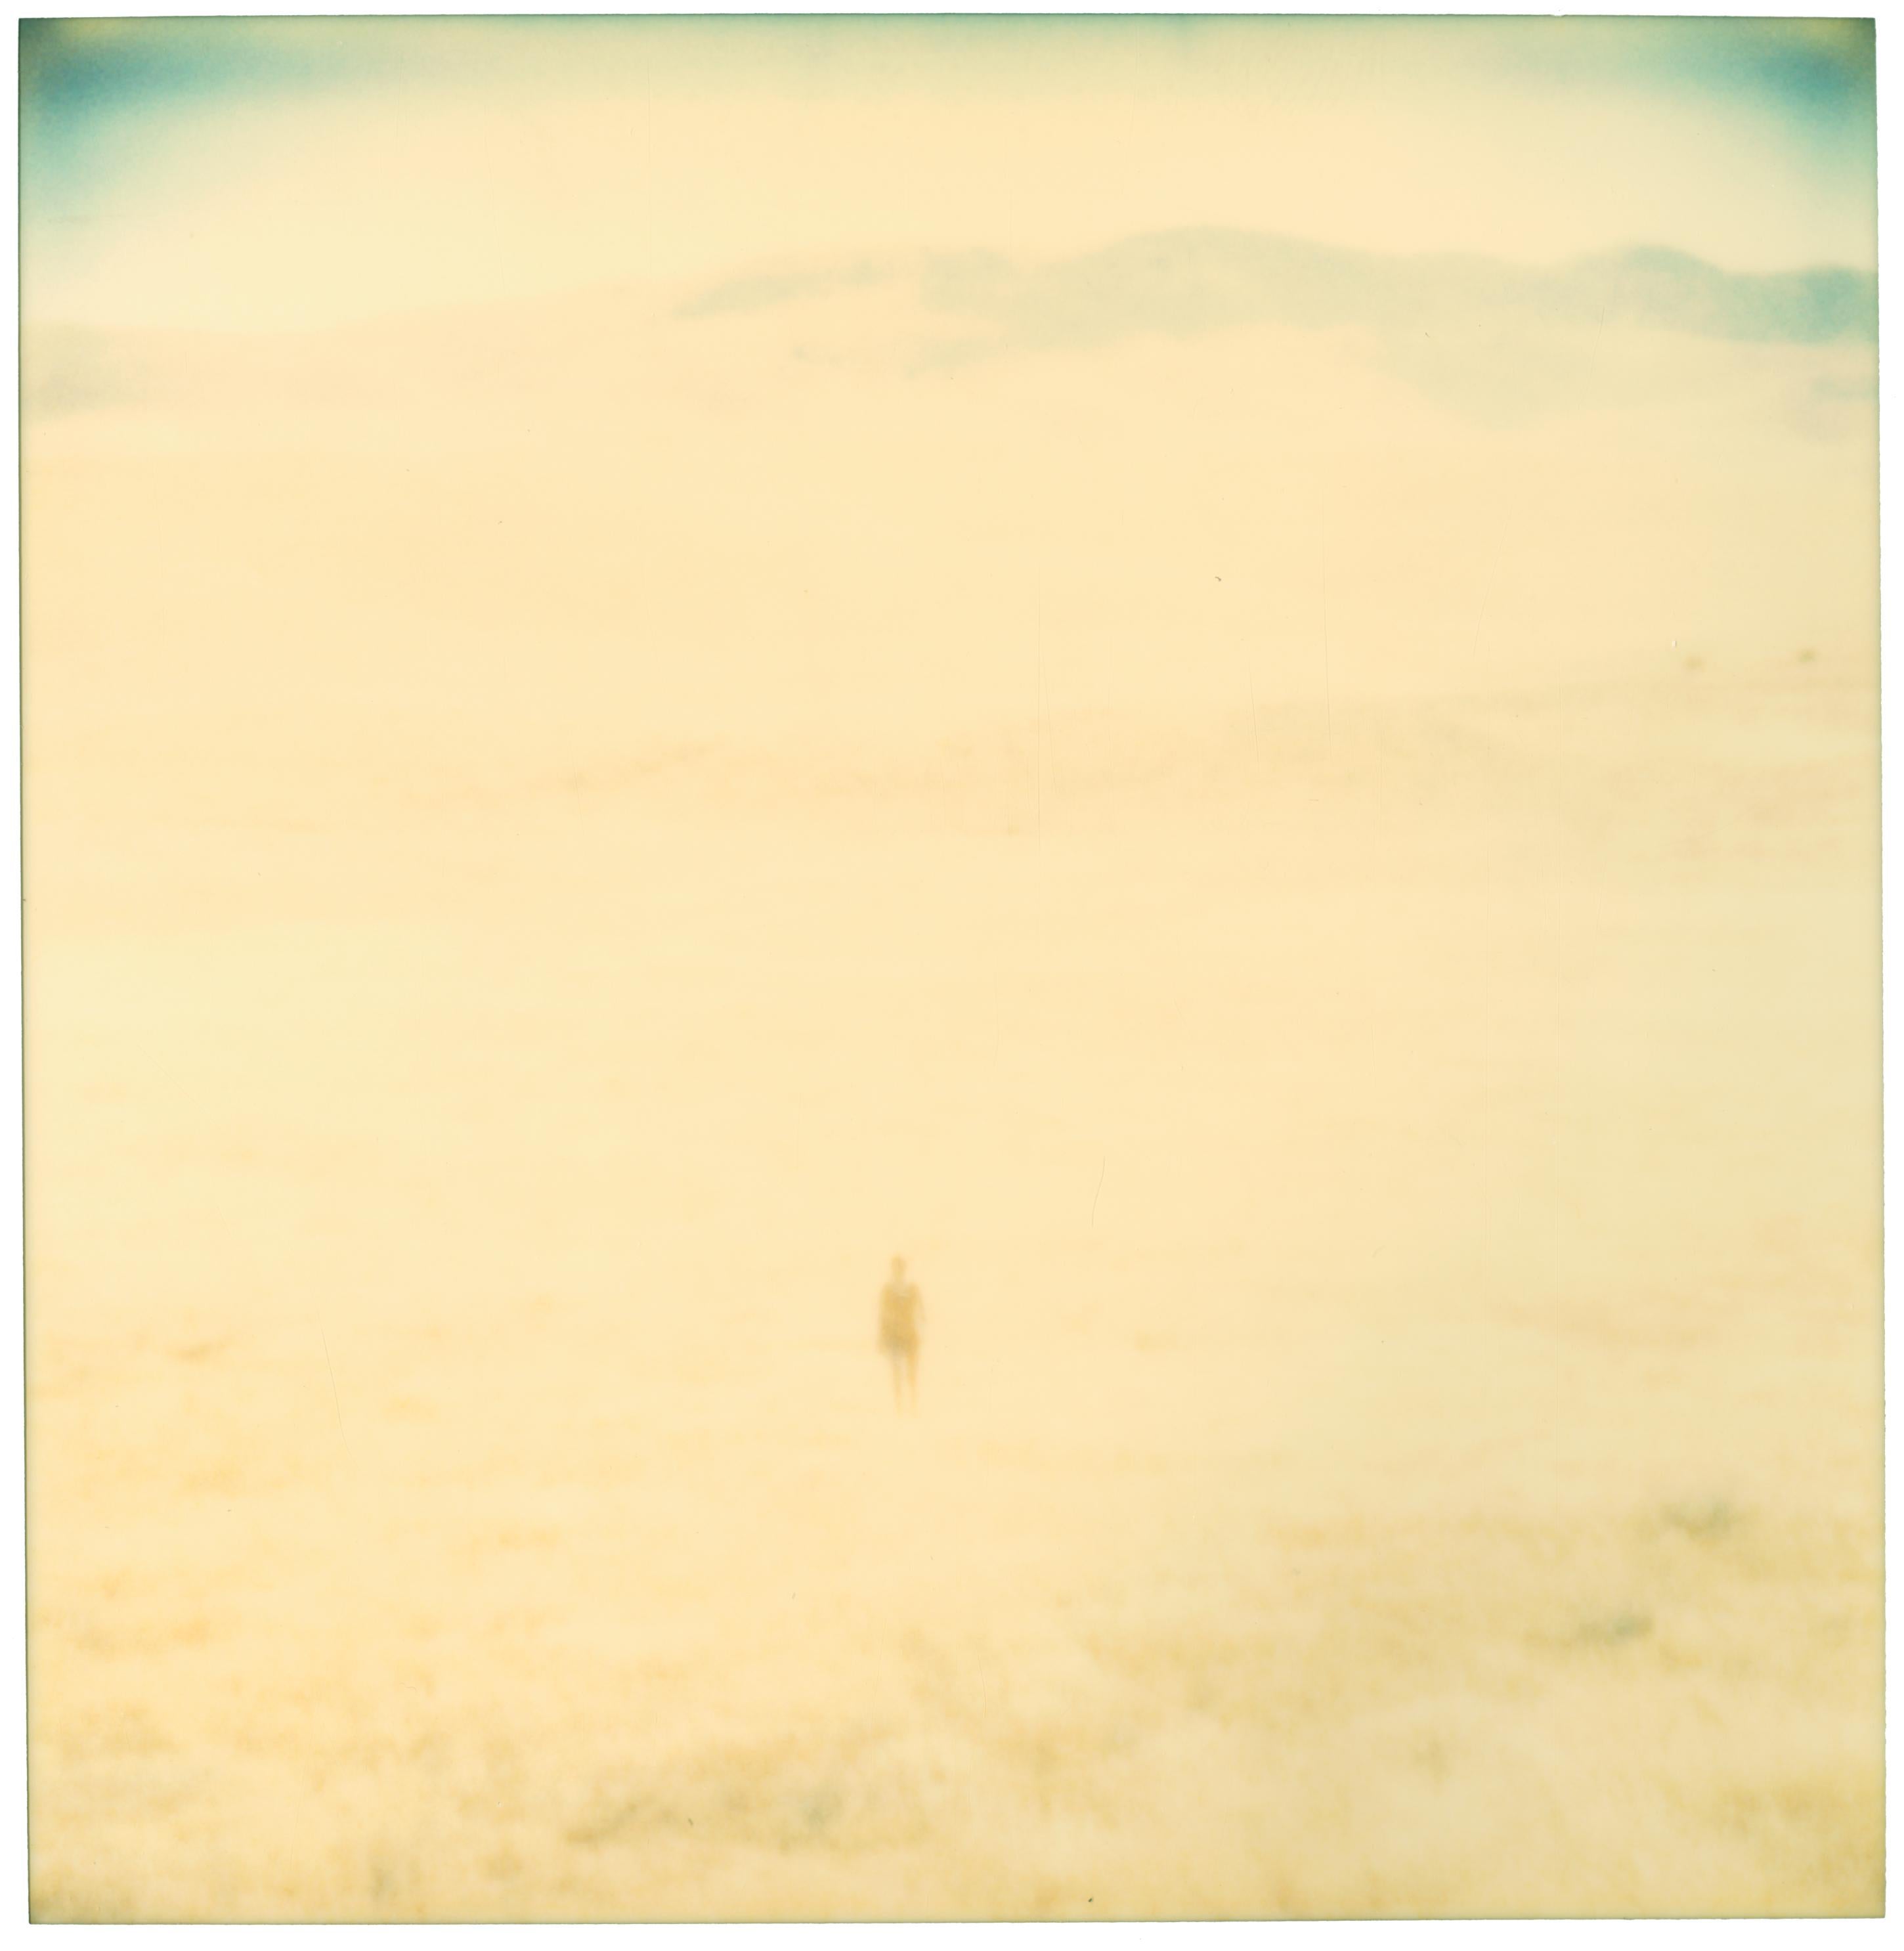 Stefanie Schneider Landscape Photograph - Untitled (Oilfields) - Contemporary, 21st Century, Desert, Polaroid, Landscape 